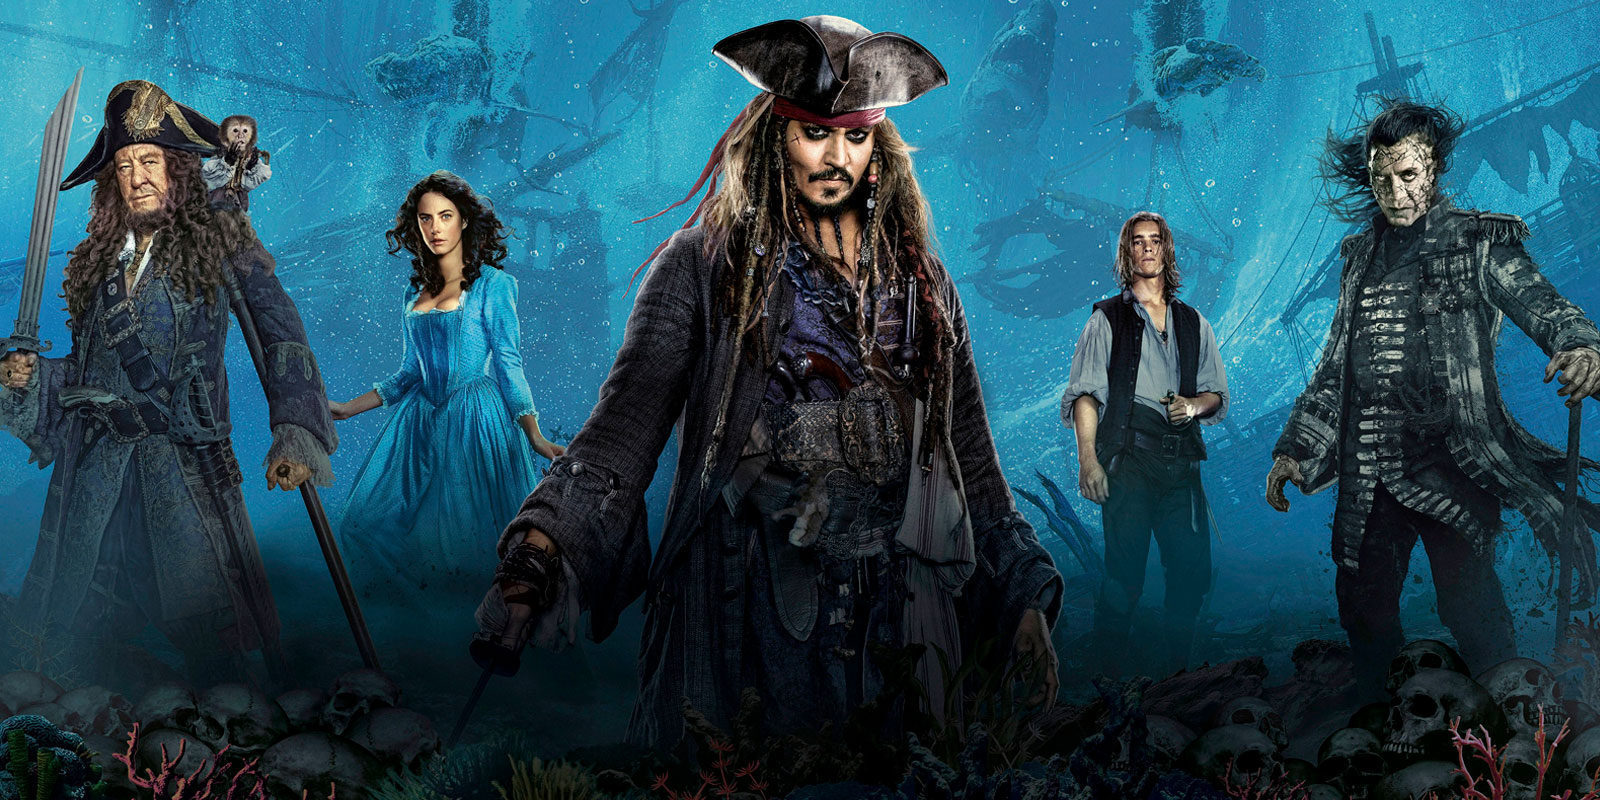 La sexta entrega de 'Piratas del Caribe' deberá esperar un poco